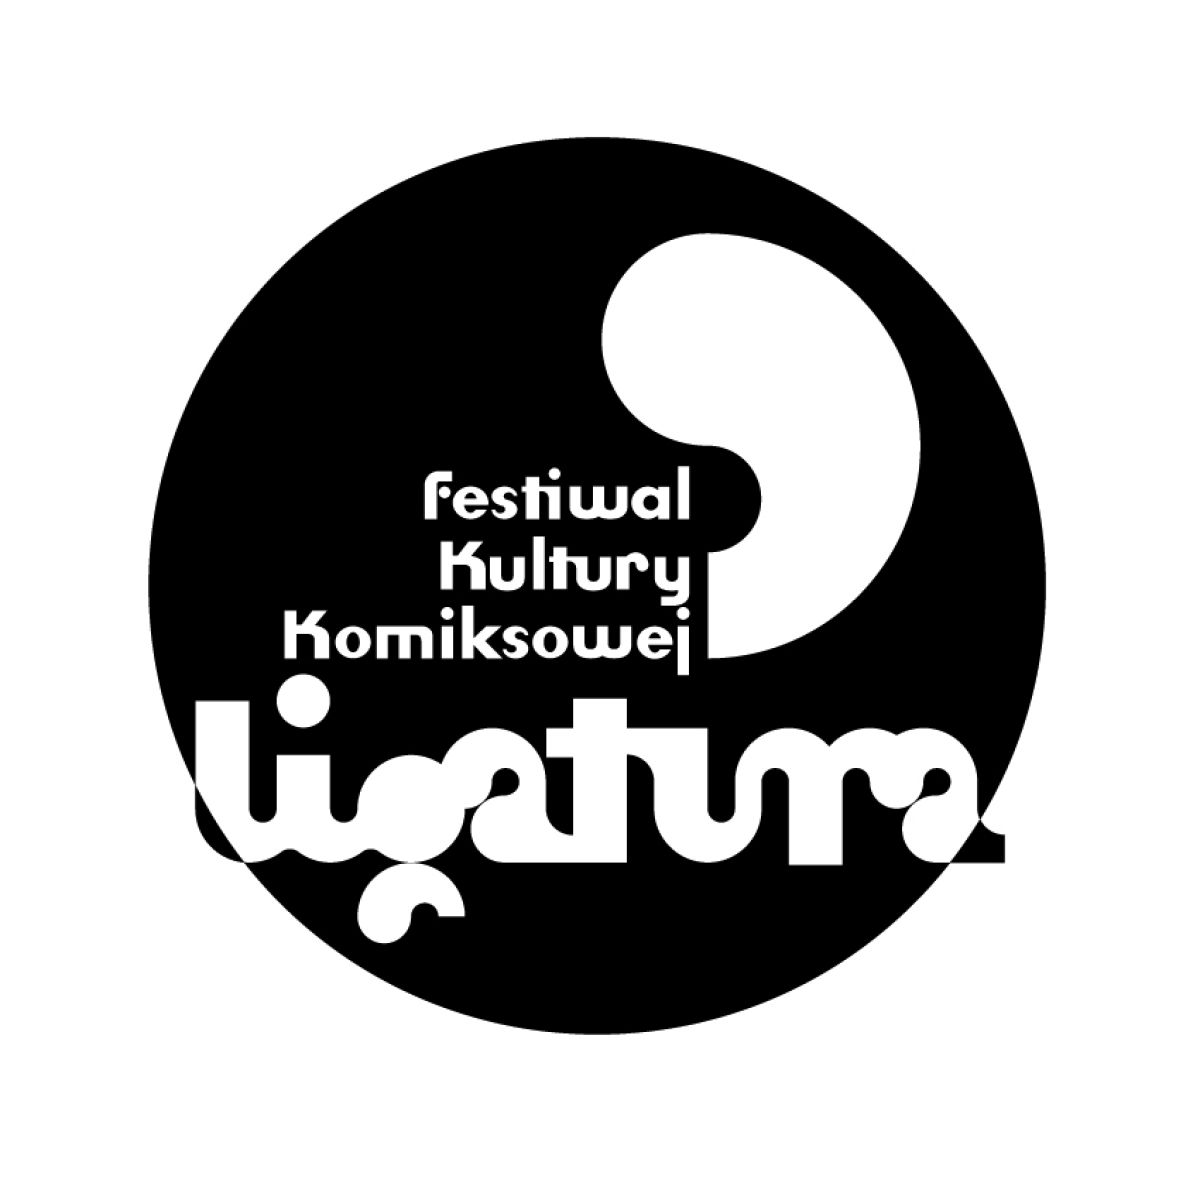 Ligatura - III międzynarodowy festiwal kultury komiksowej startuje w Poznaniu!